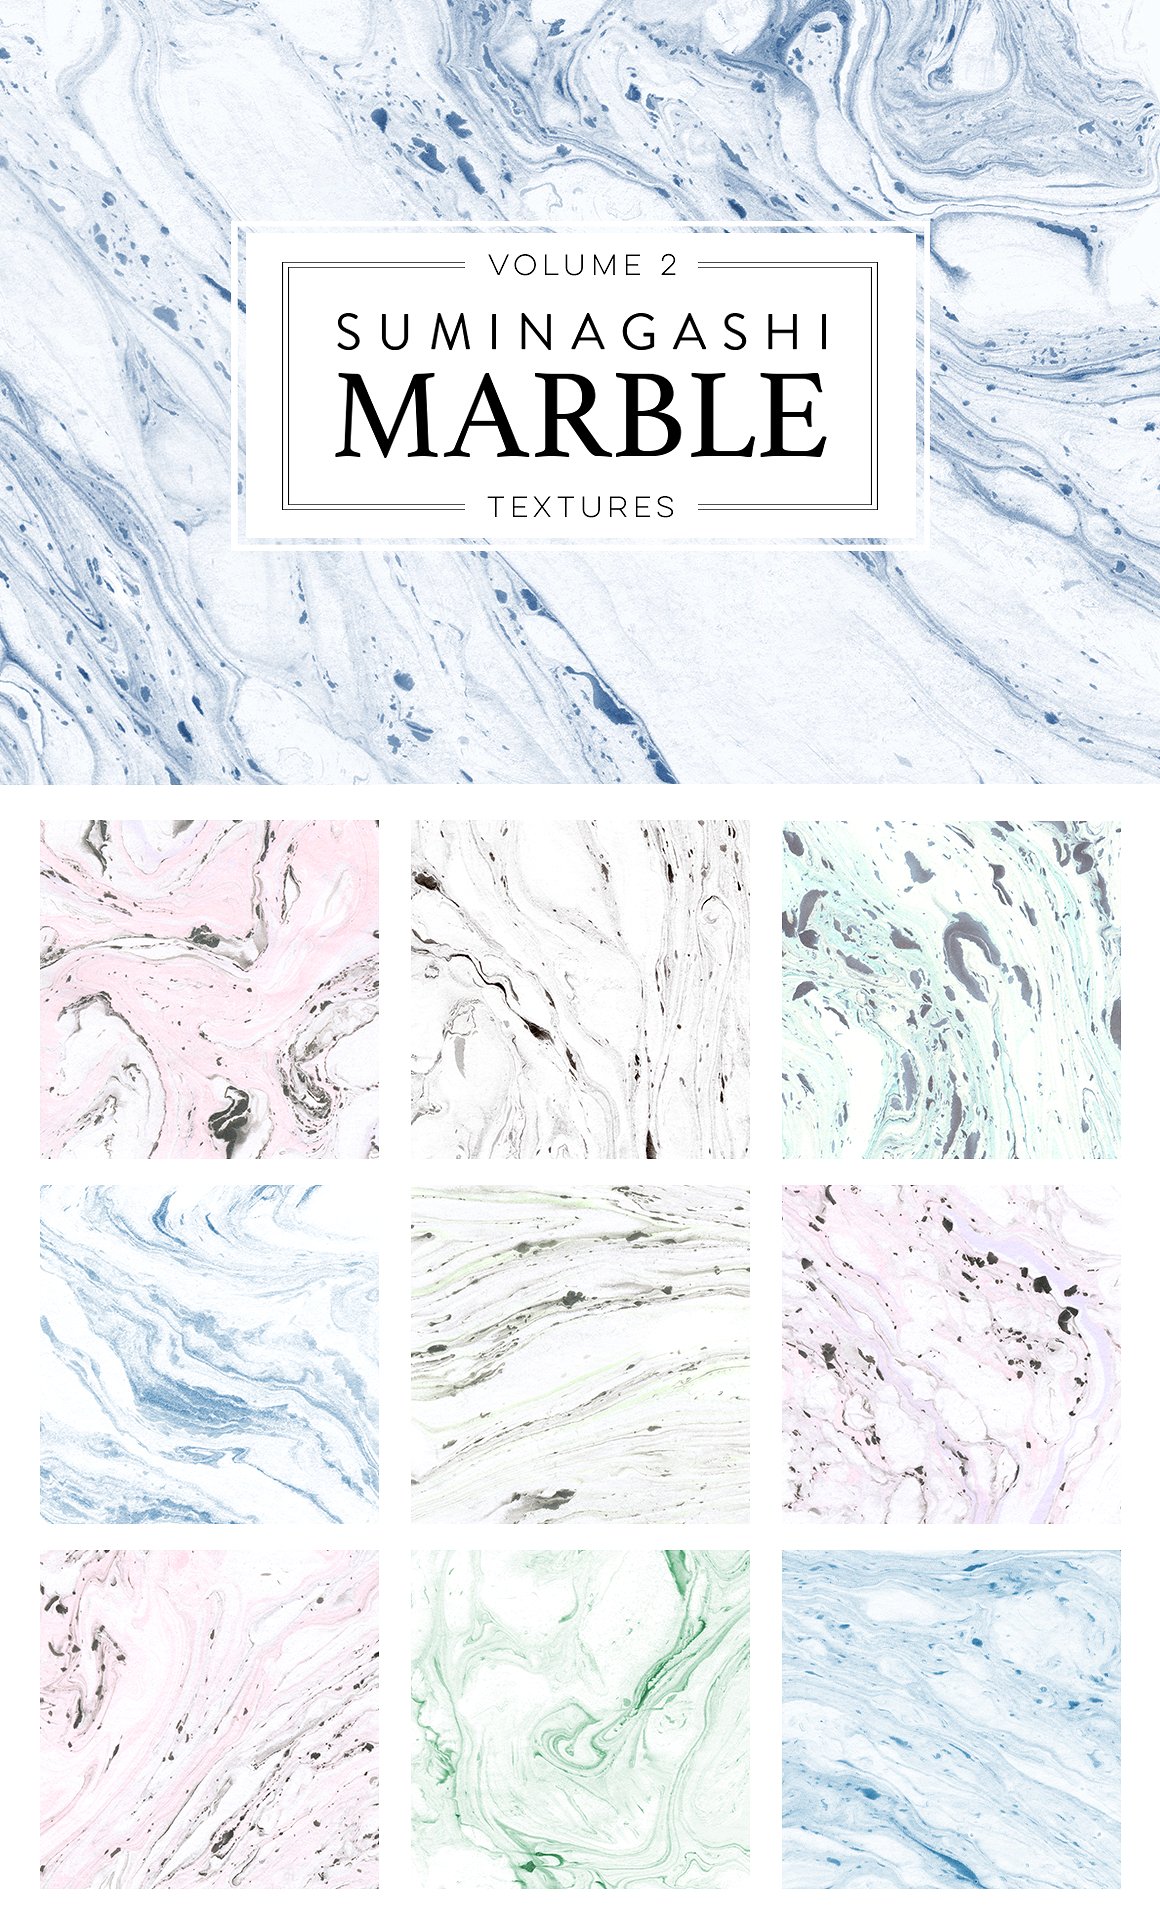 90个手工制作的大理石纸纹理集合包 Marble Paper